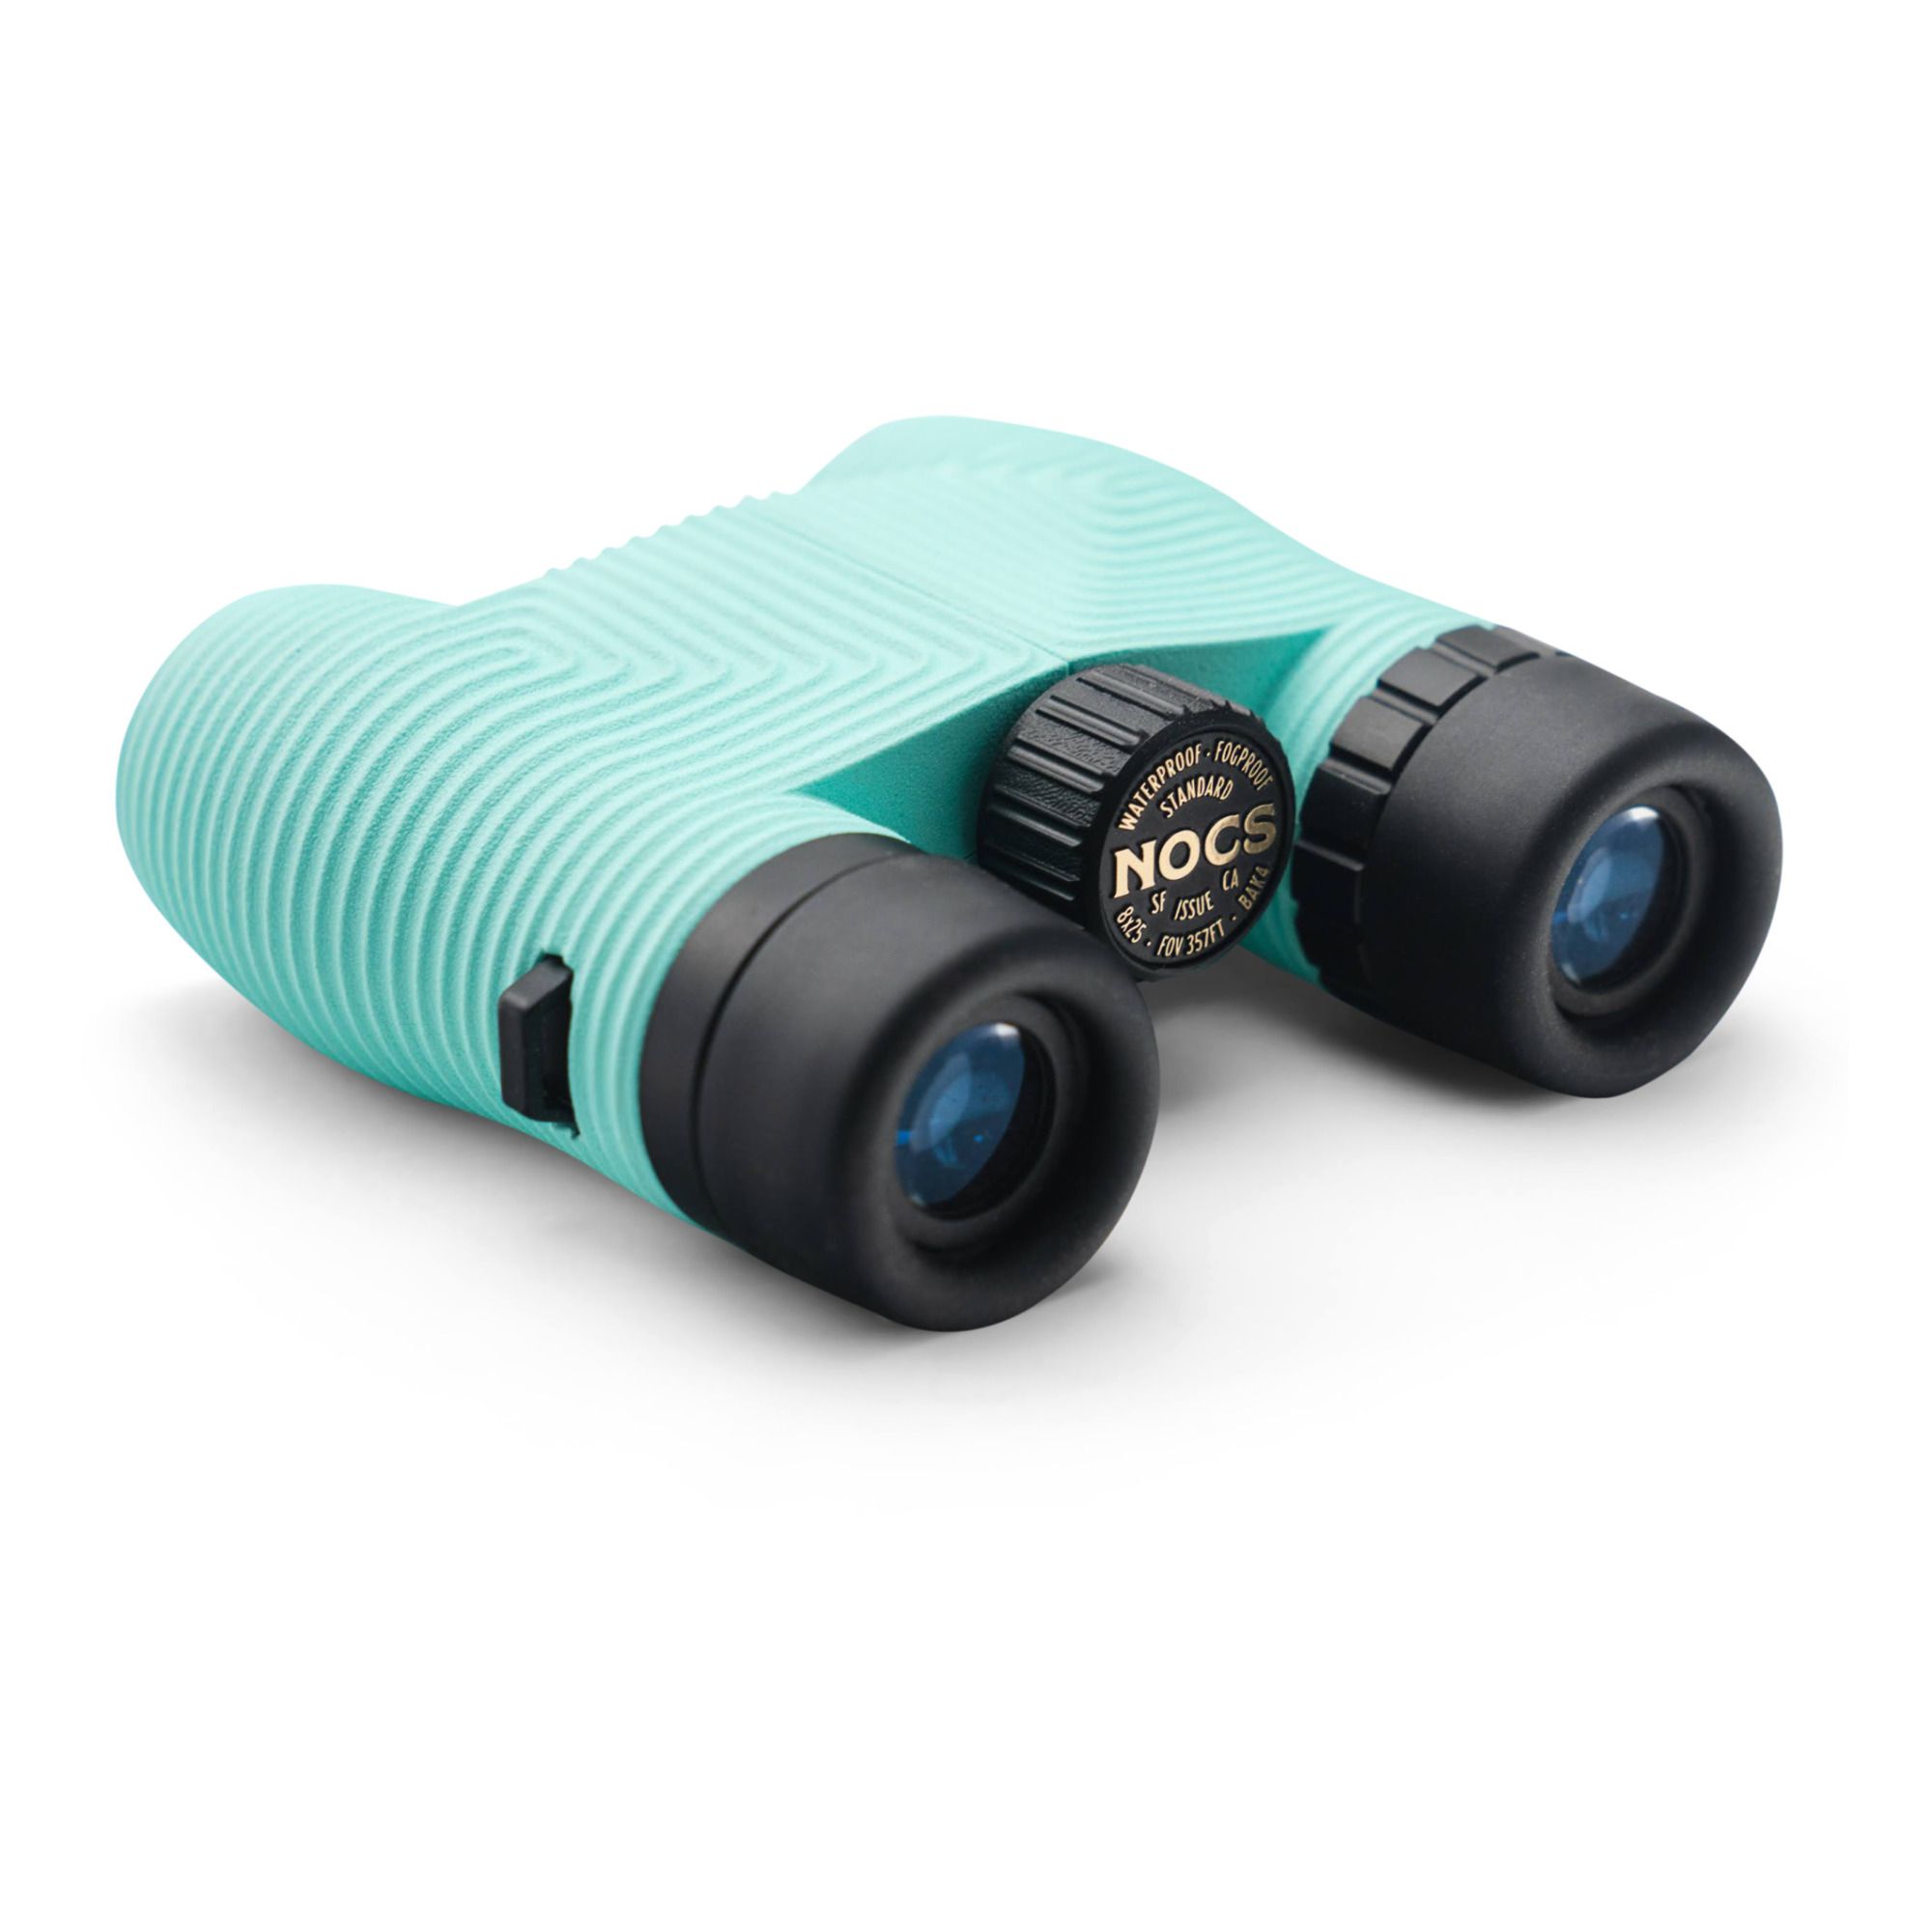 Nocs Provisions - Jumelles waterproof Binoculars - Vert d'eau